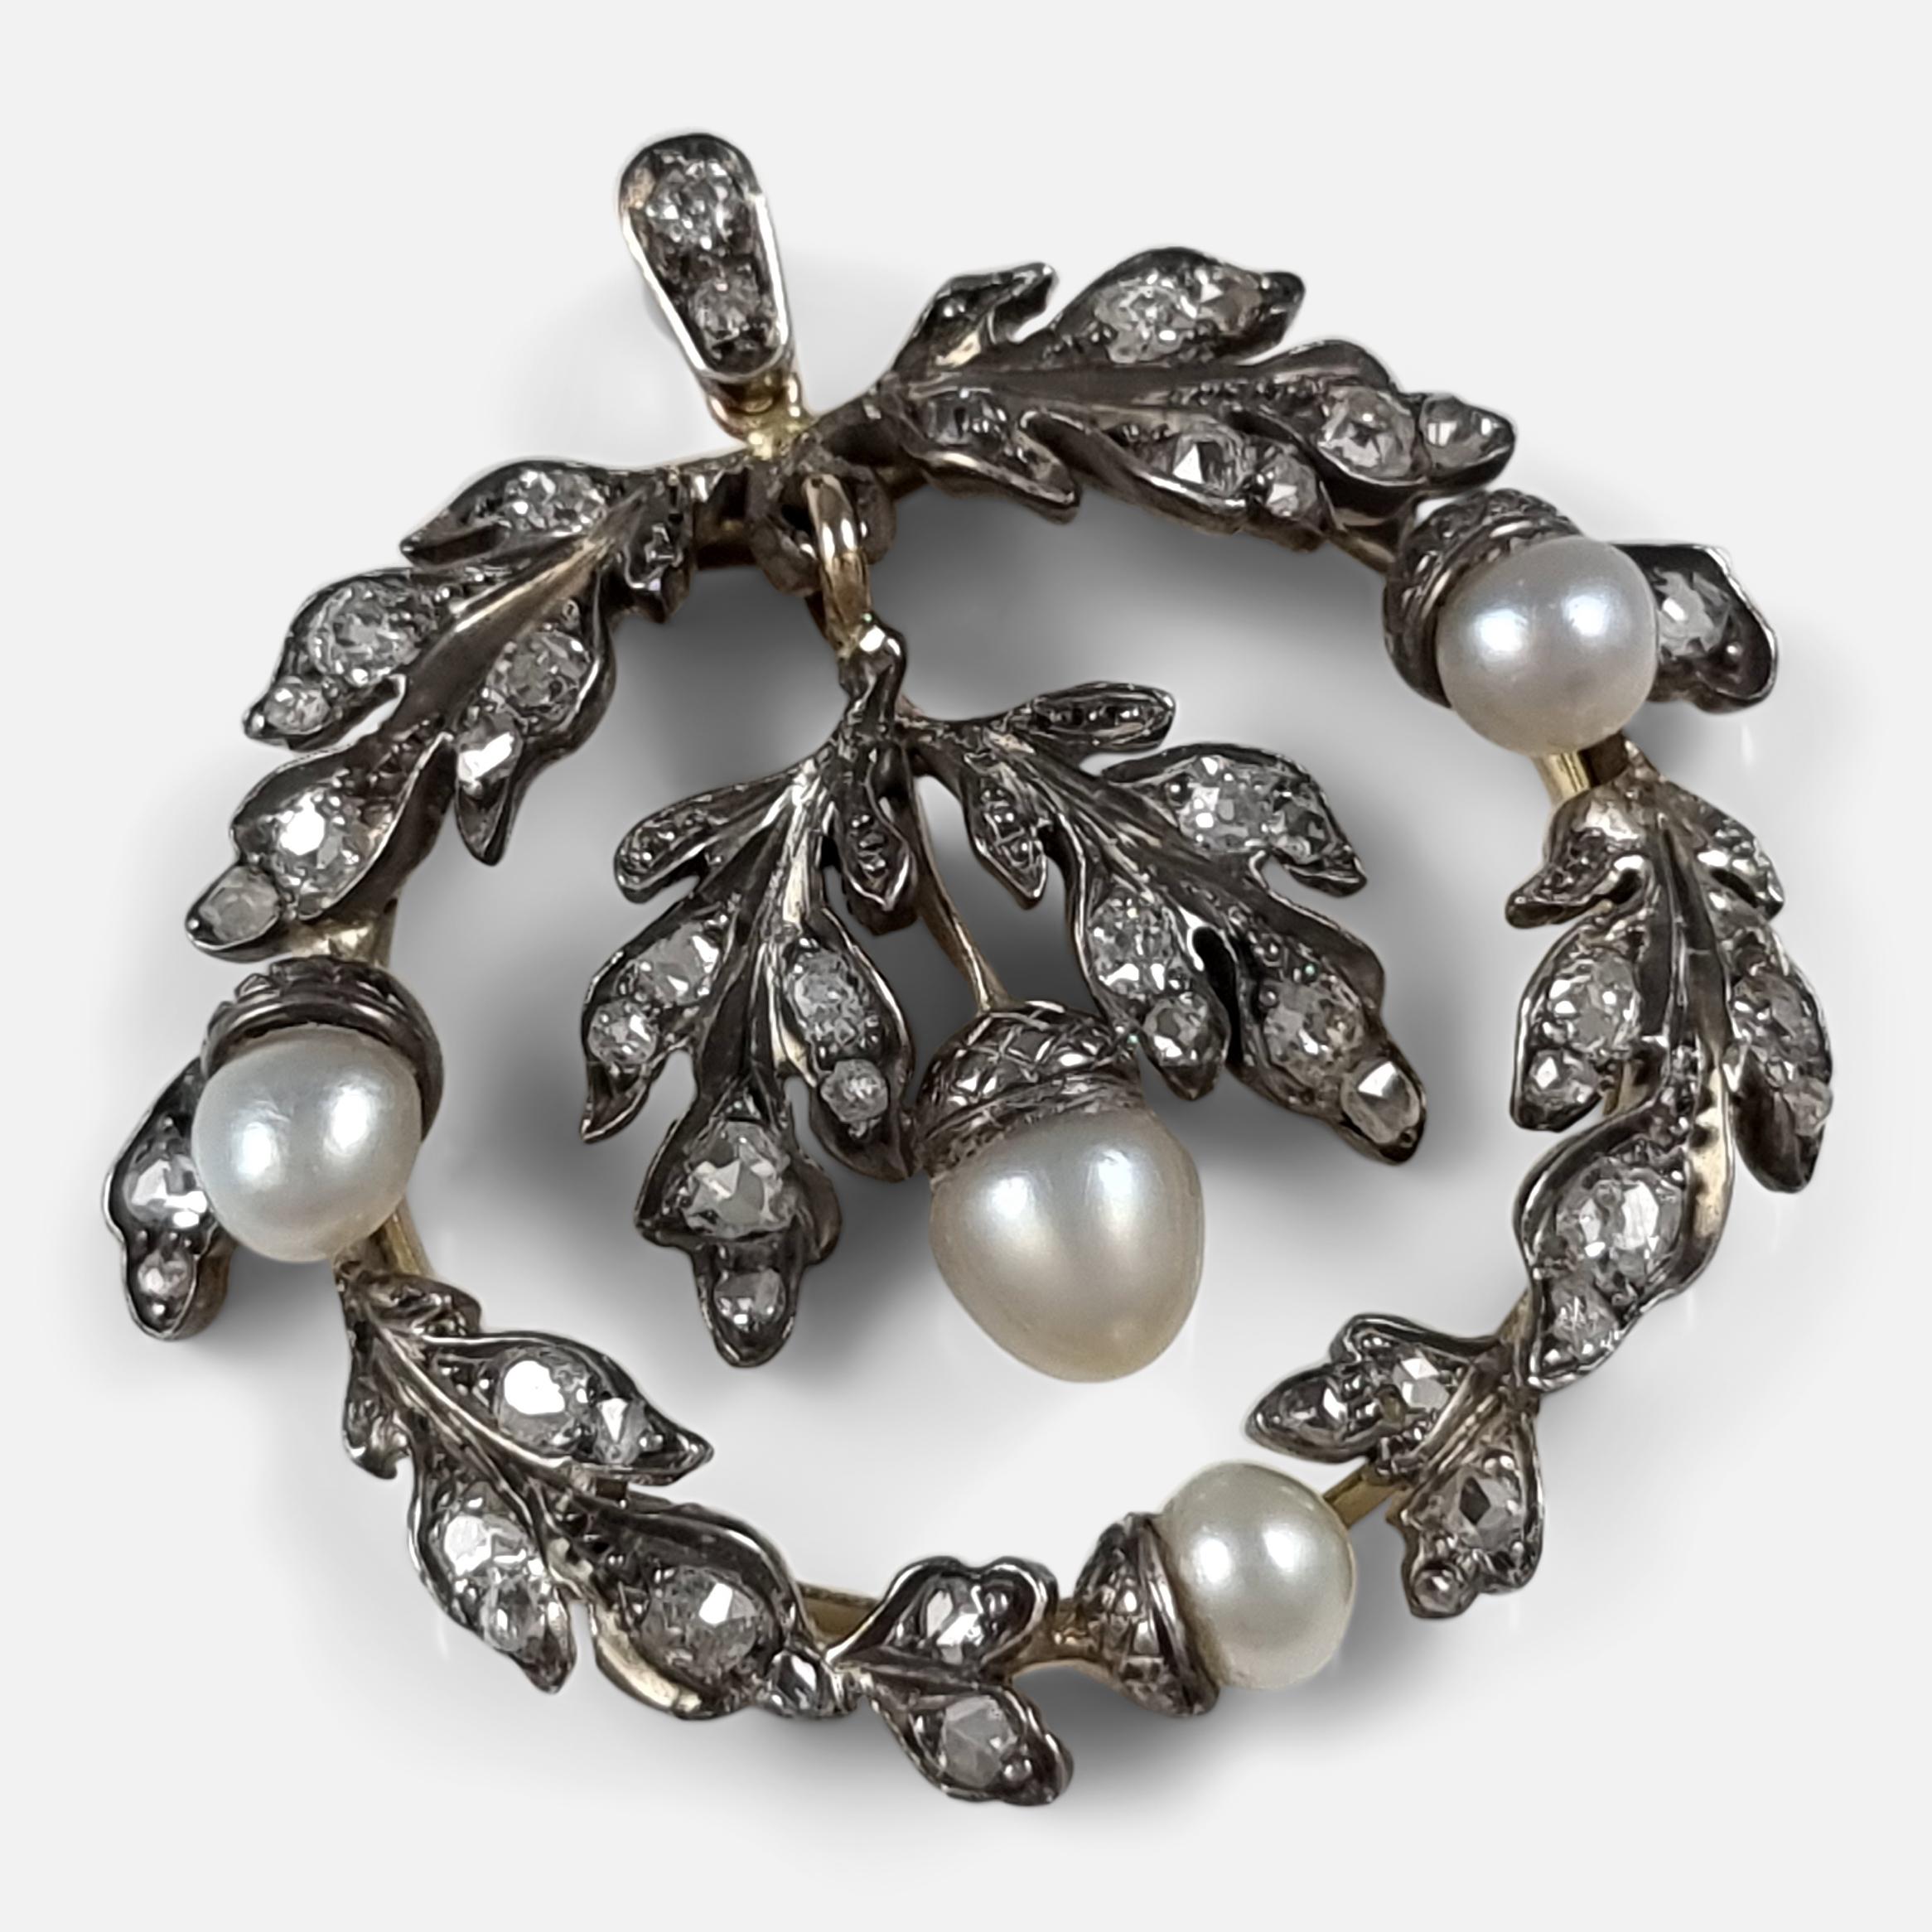 Ein Diamant- und Perlenanhänger aus der Mitte des 19. Jahrhunderts. Der Anhänger besteht aus einem Kranz aus Eichenblättern und einem hängenden, blattförmigen Tropfen in der Mitte. Er ist mit alten Diamanten im Kissen- und Rosenschliff und